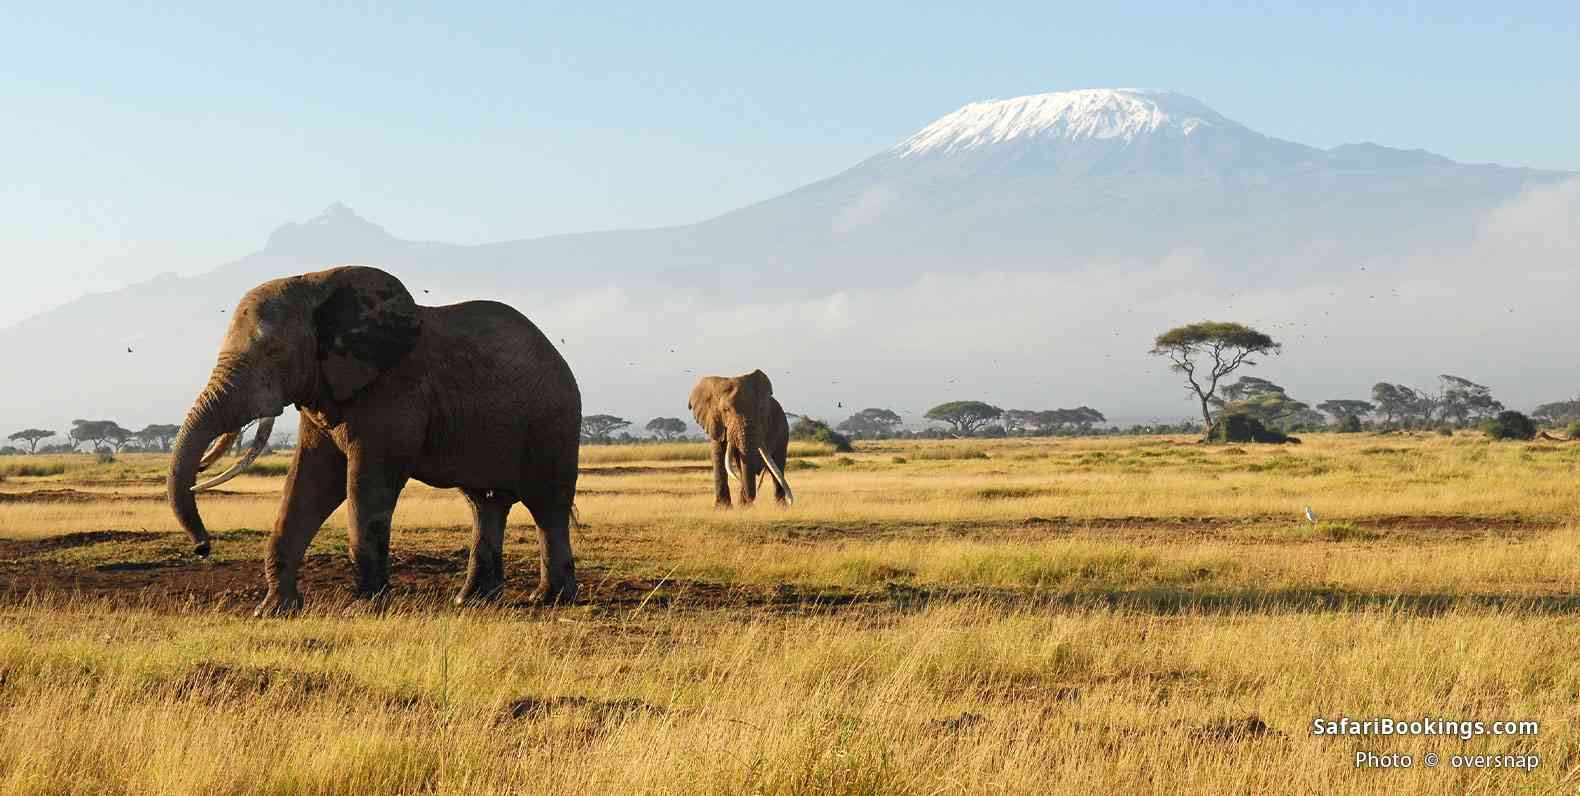 Elephants walking in front of Mount Kilimanjaro